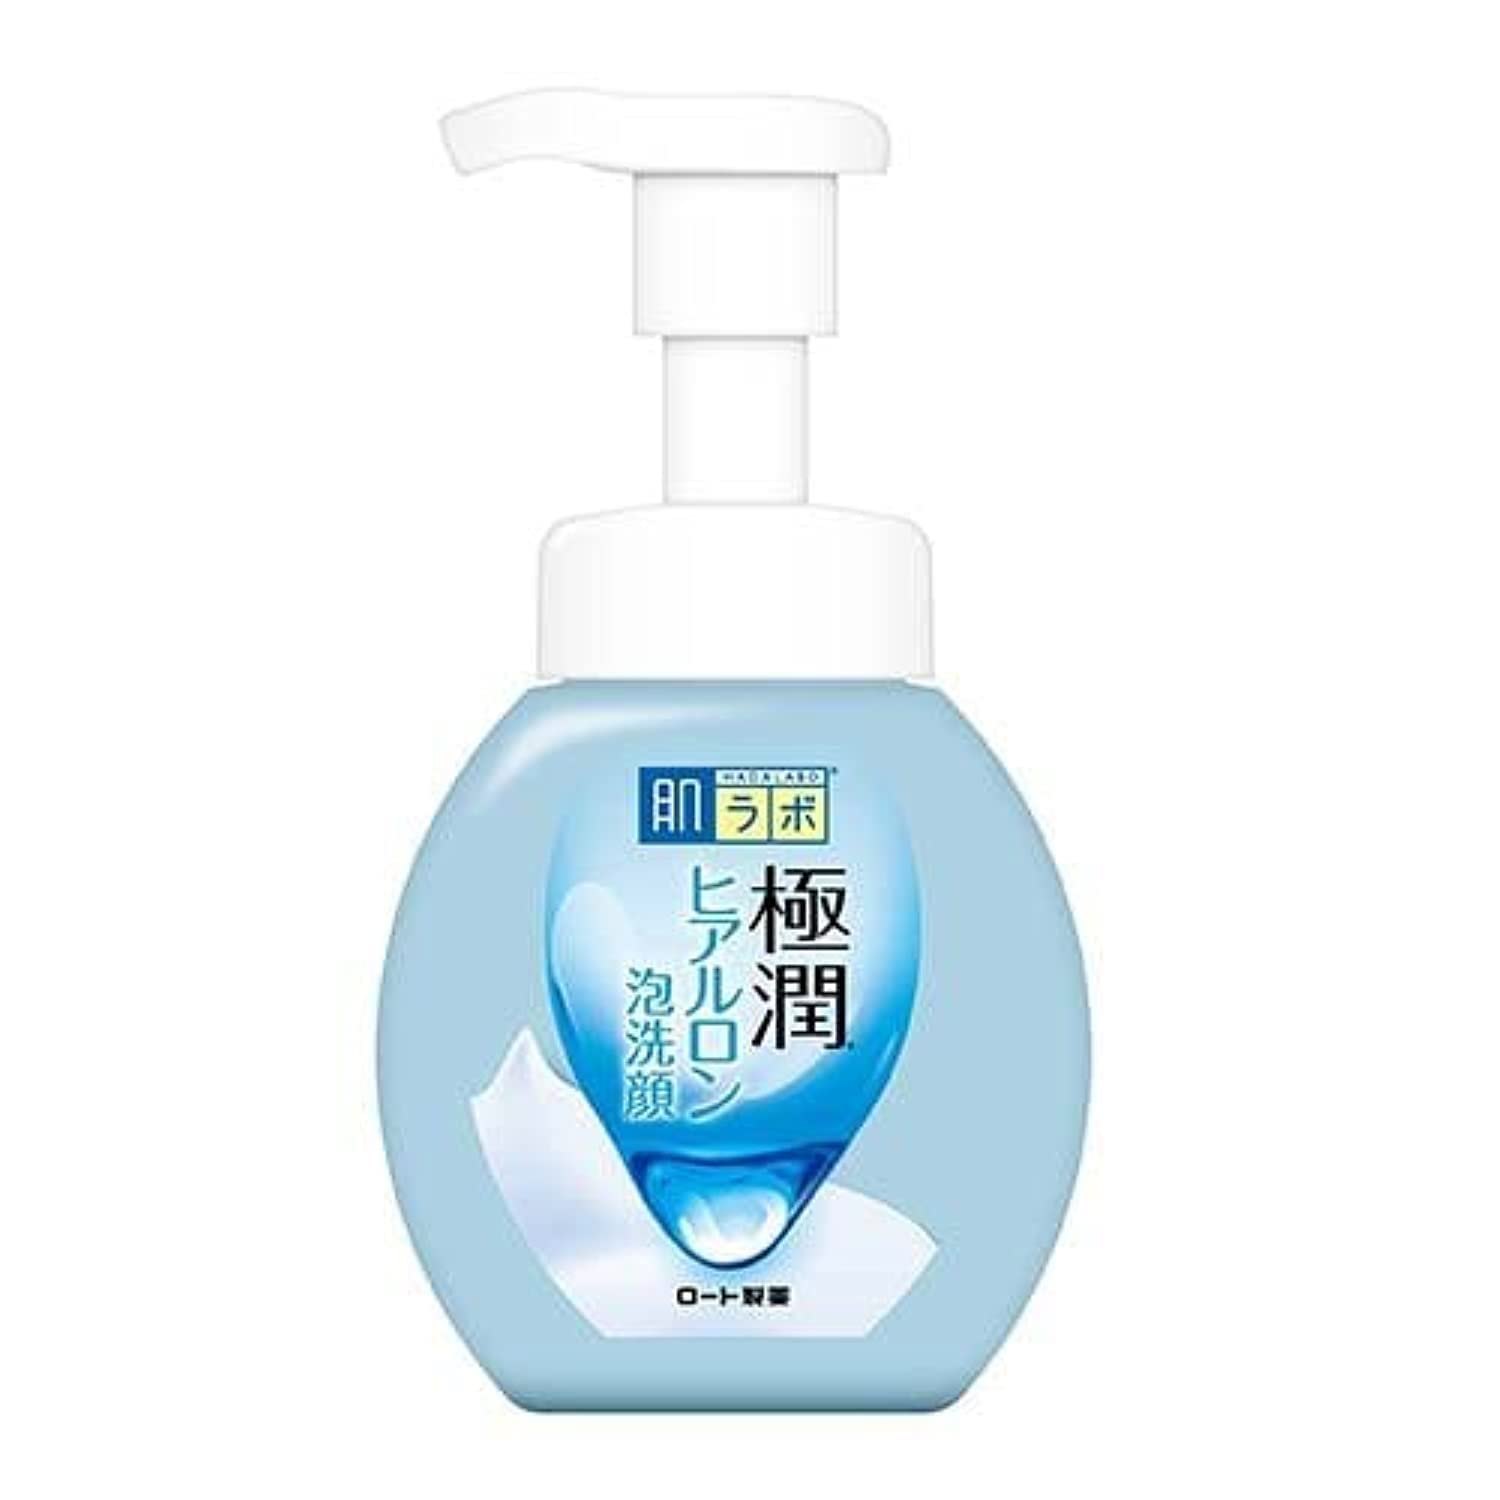 Hada Labo Gokujyun Hyaluronic Foam Face wash 160ml